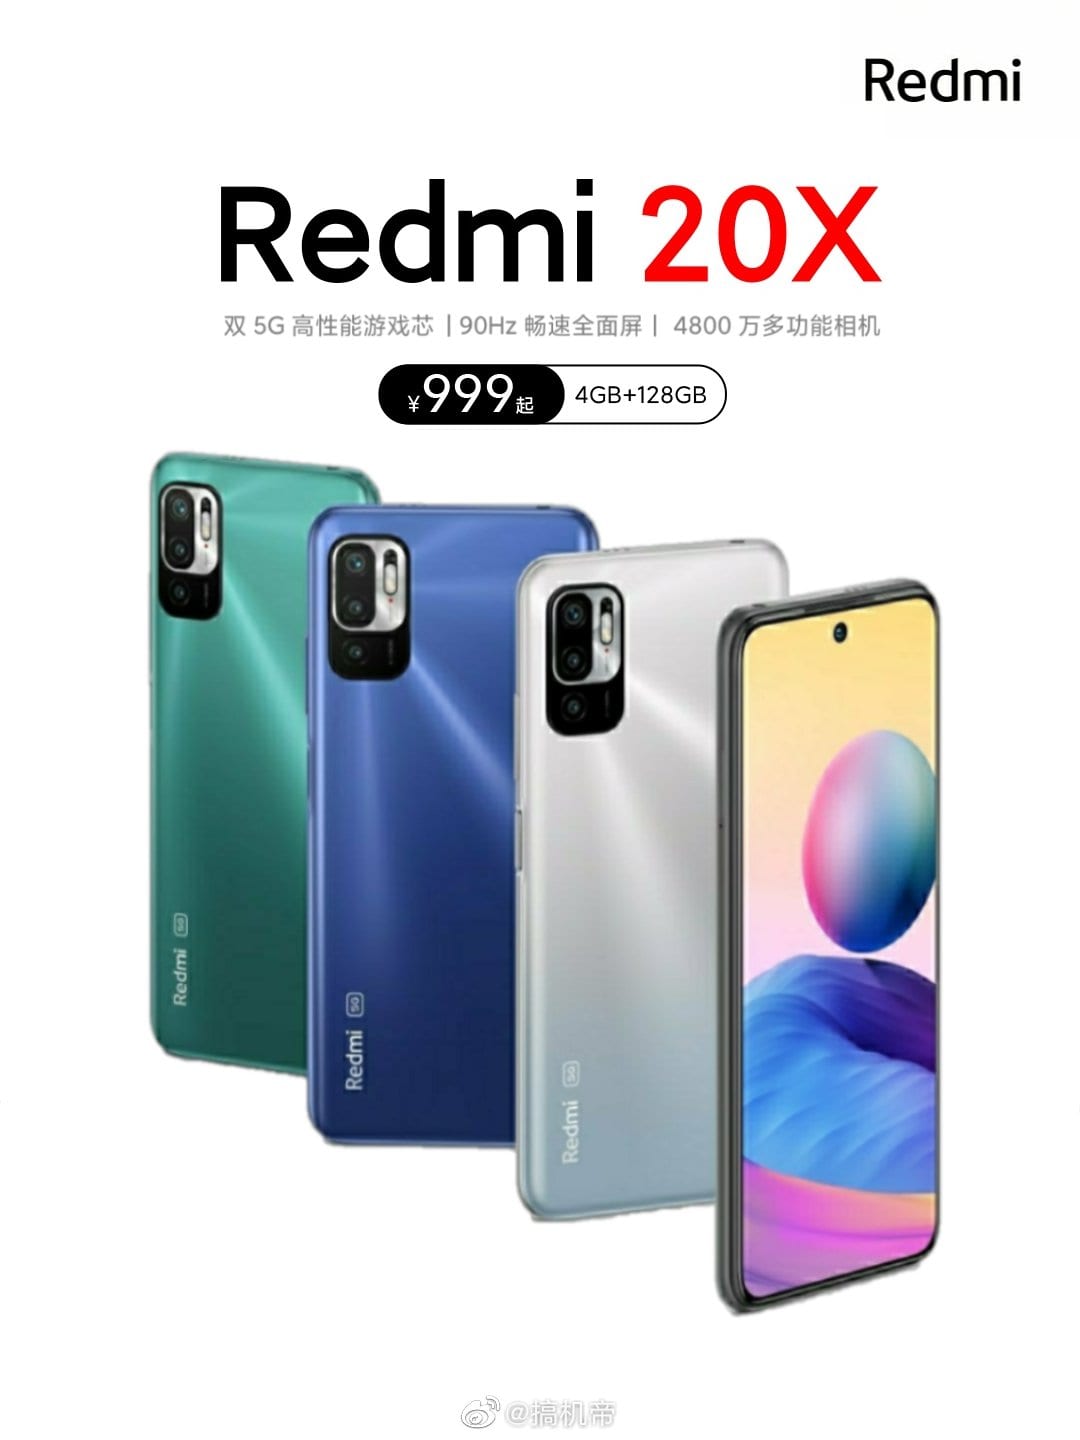 Imagen promocional revela el diseño del Redmi 20X